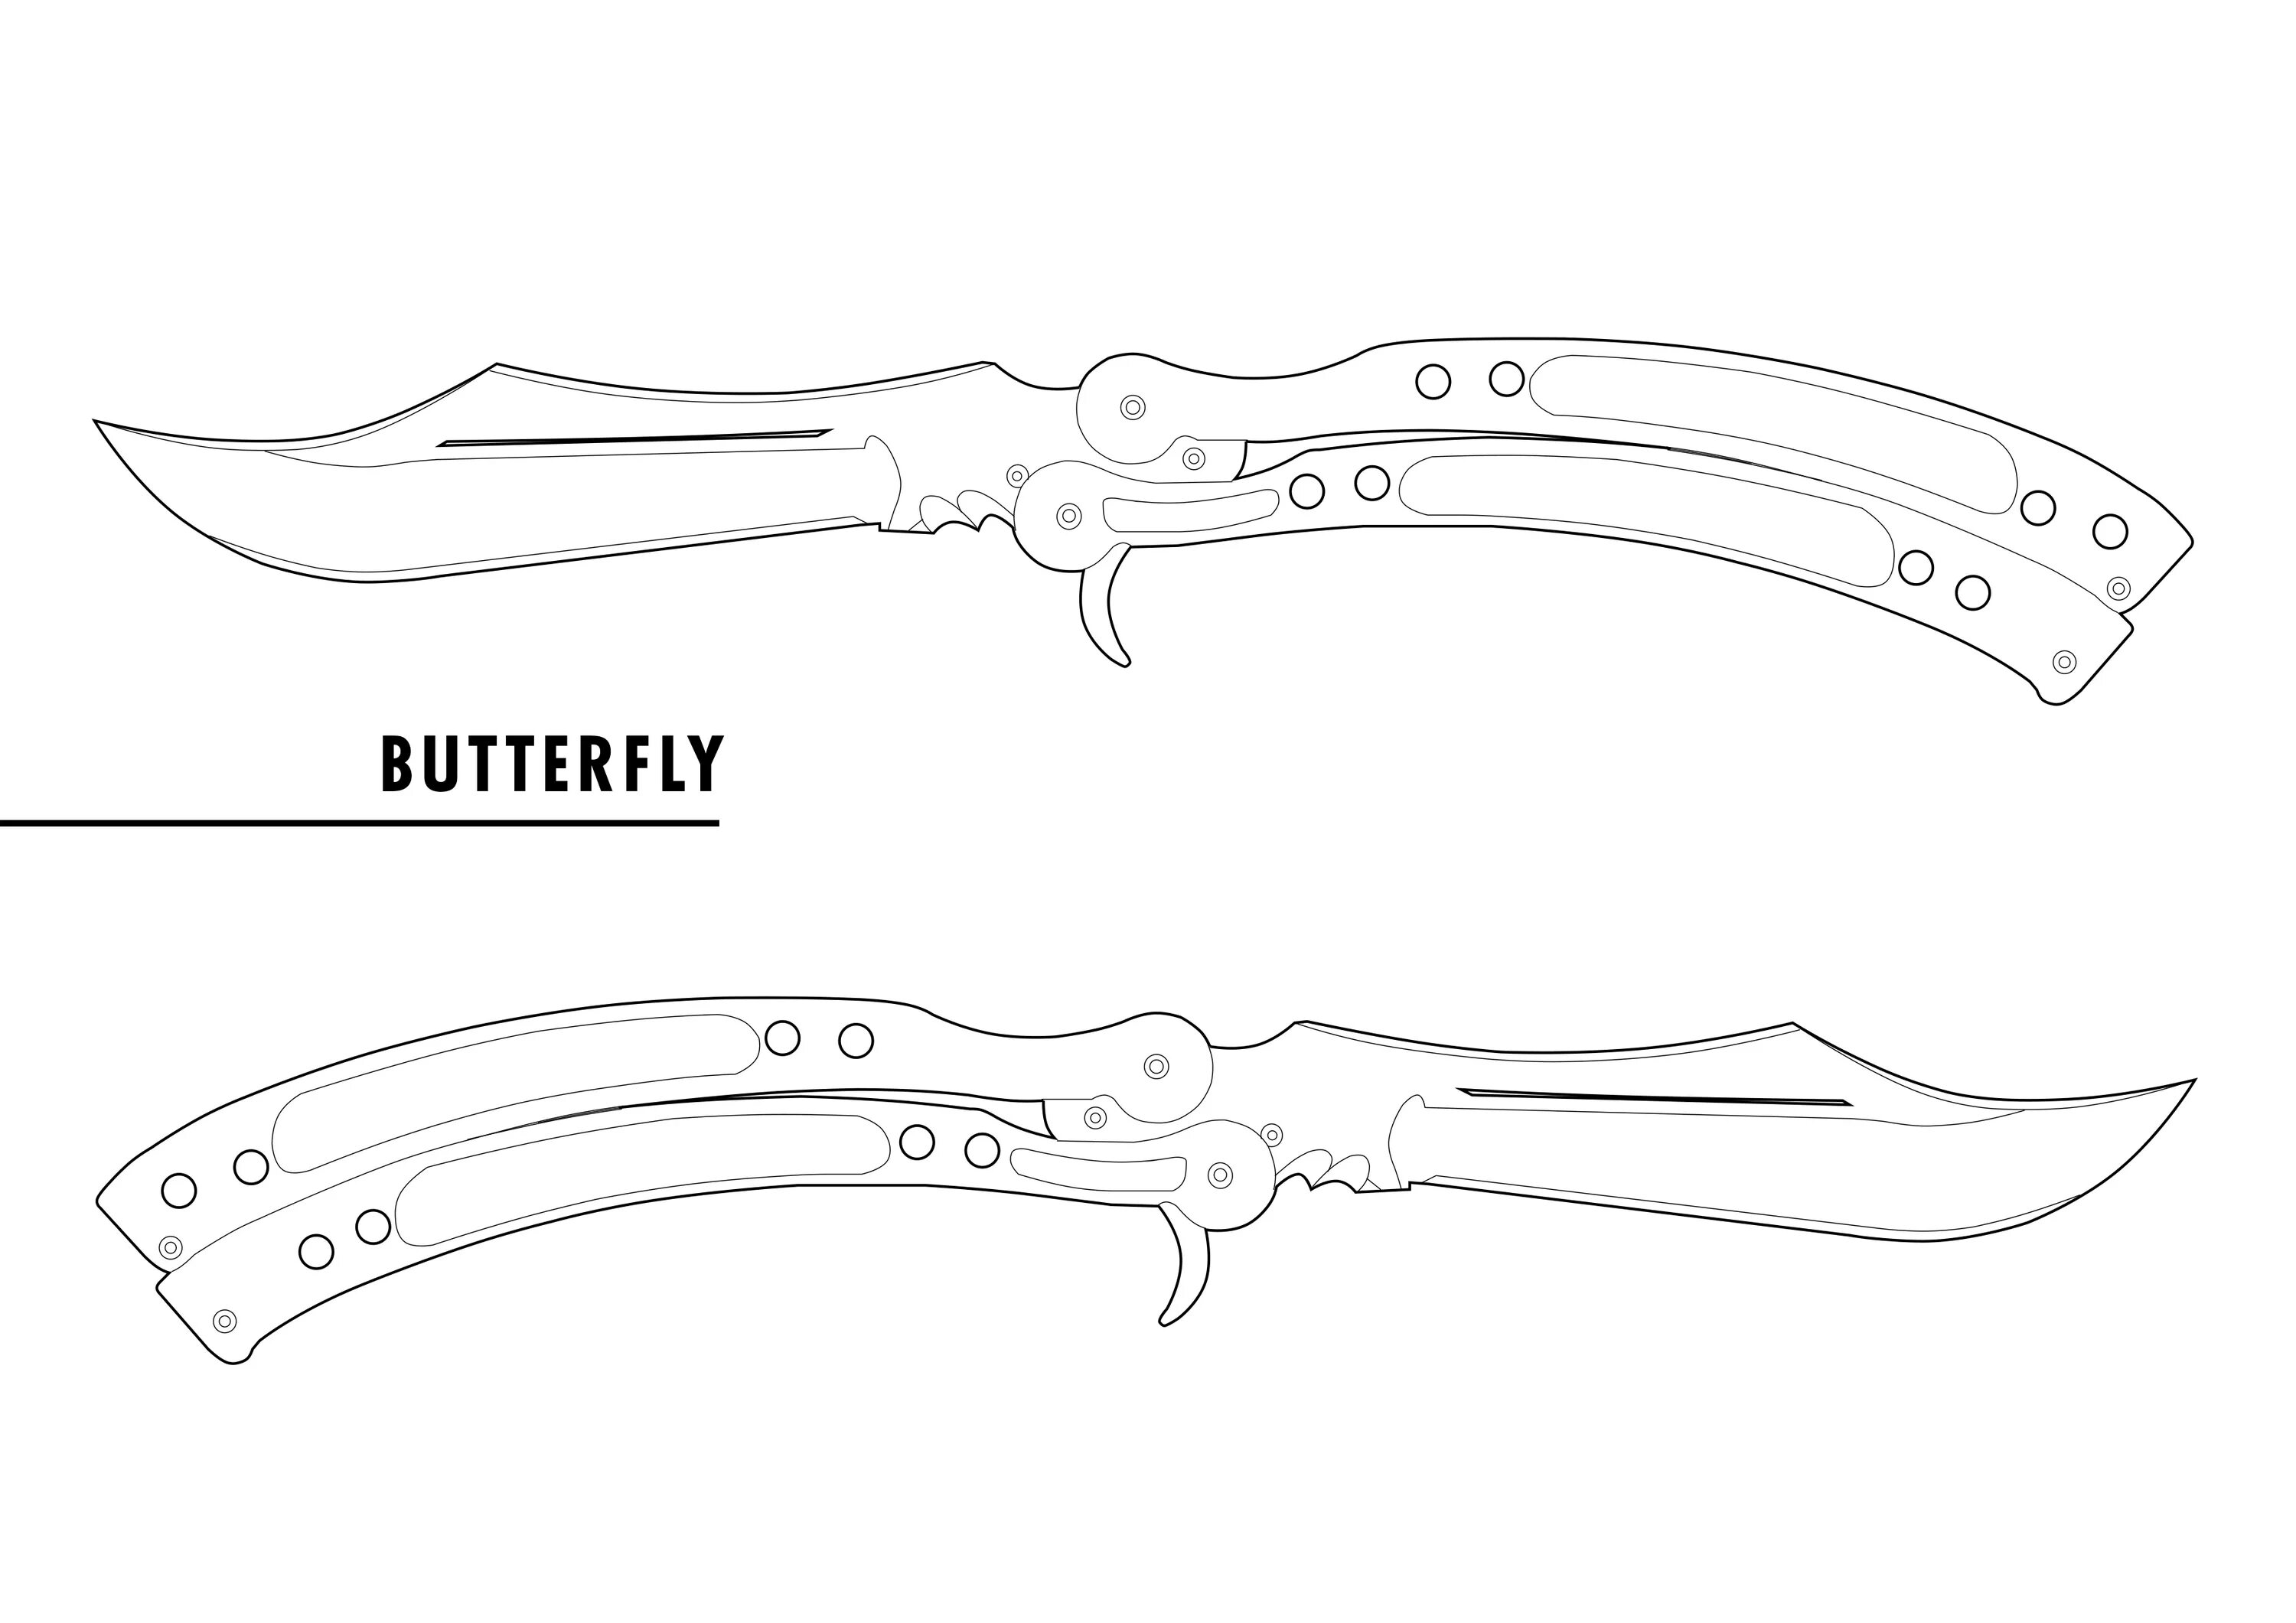 Нож бабочка чертёж Standoff 2. Чертёж ножа бабочки из Стэн Дофф 2. Нож бабочка Легаси чертеж. Чертёж ножа бабочки из стандофф 2 Легаси. Анимация ножа бабочки